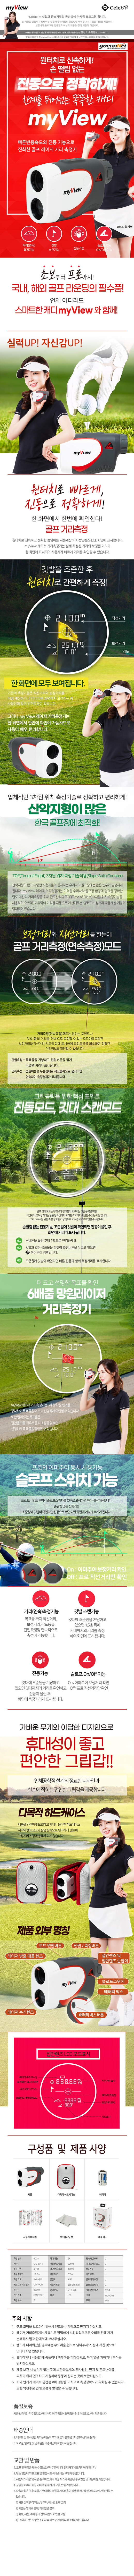 golf02-d.jpg